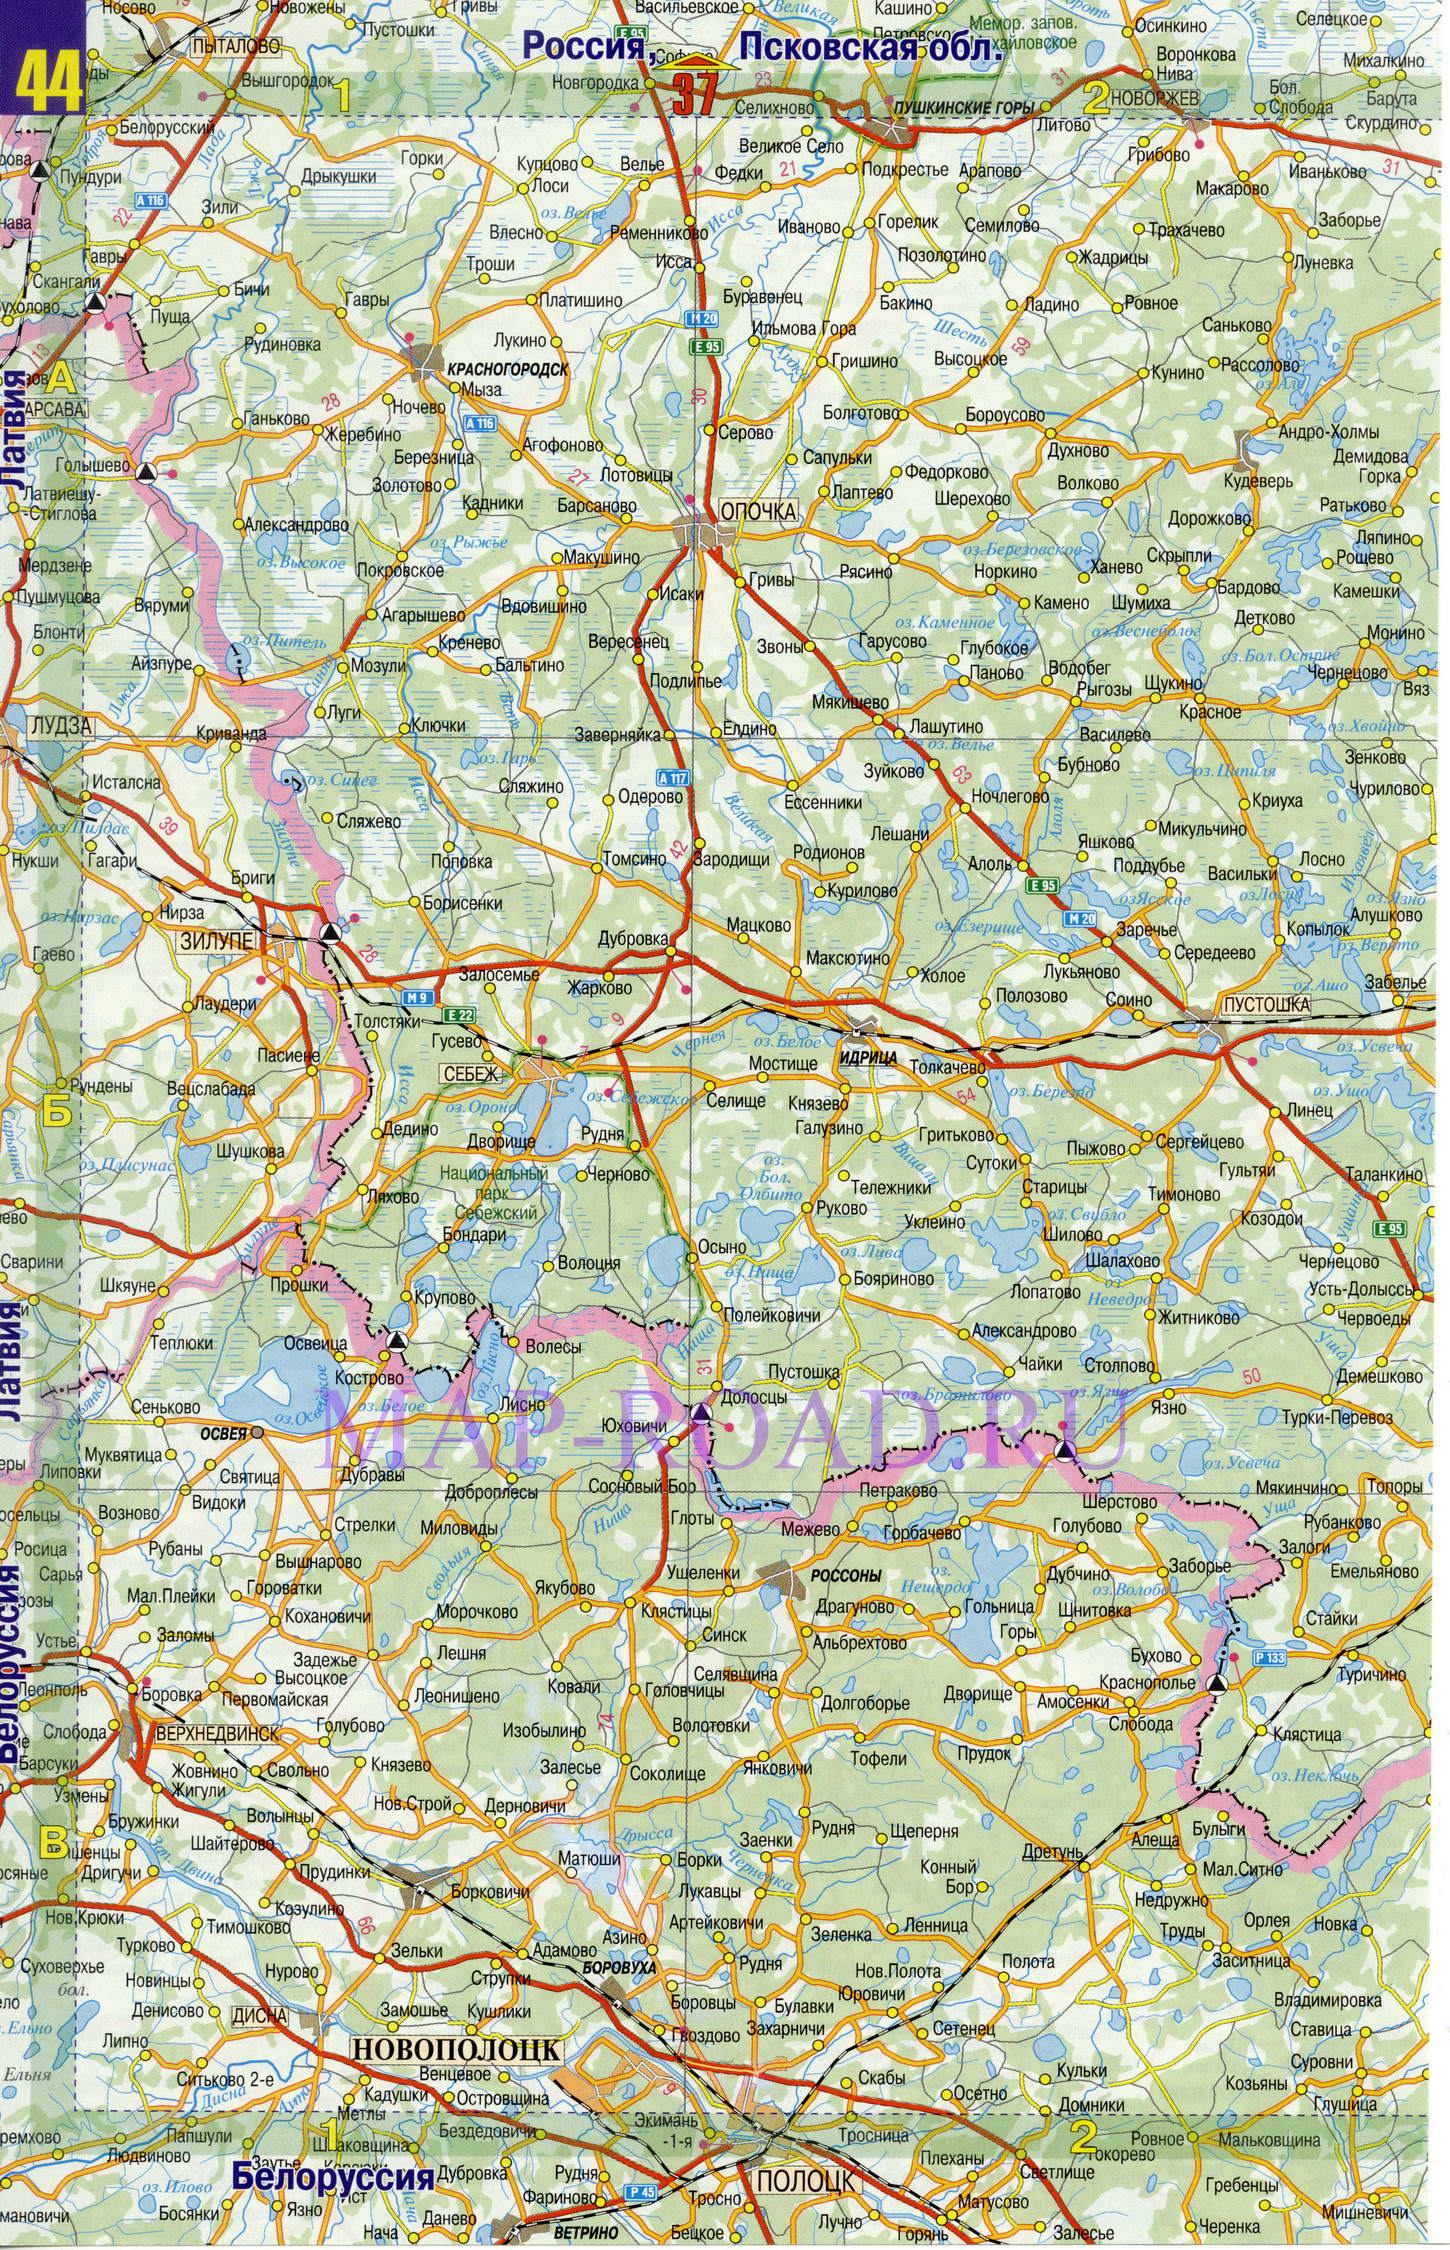 Подробная карта дорог Псковской области. Карта масштаба 1см:7км - Псковская область, A1 - 